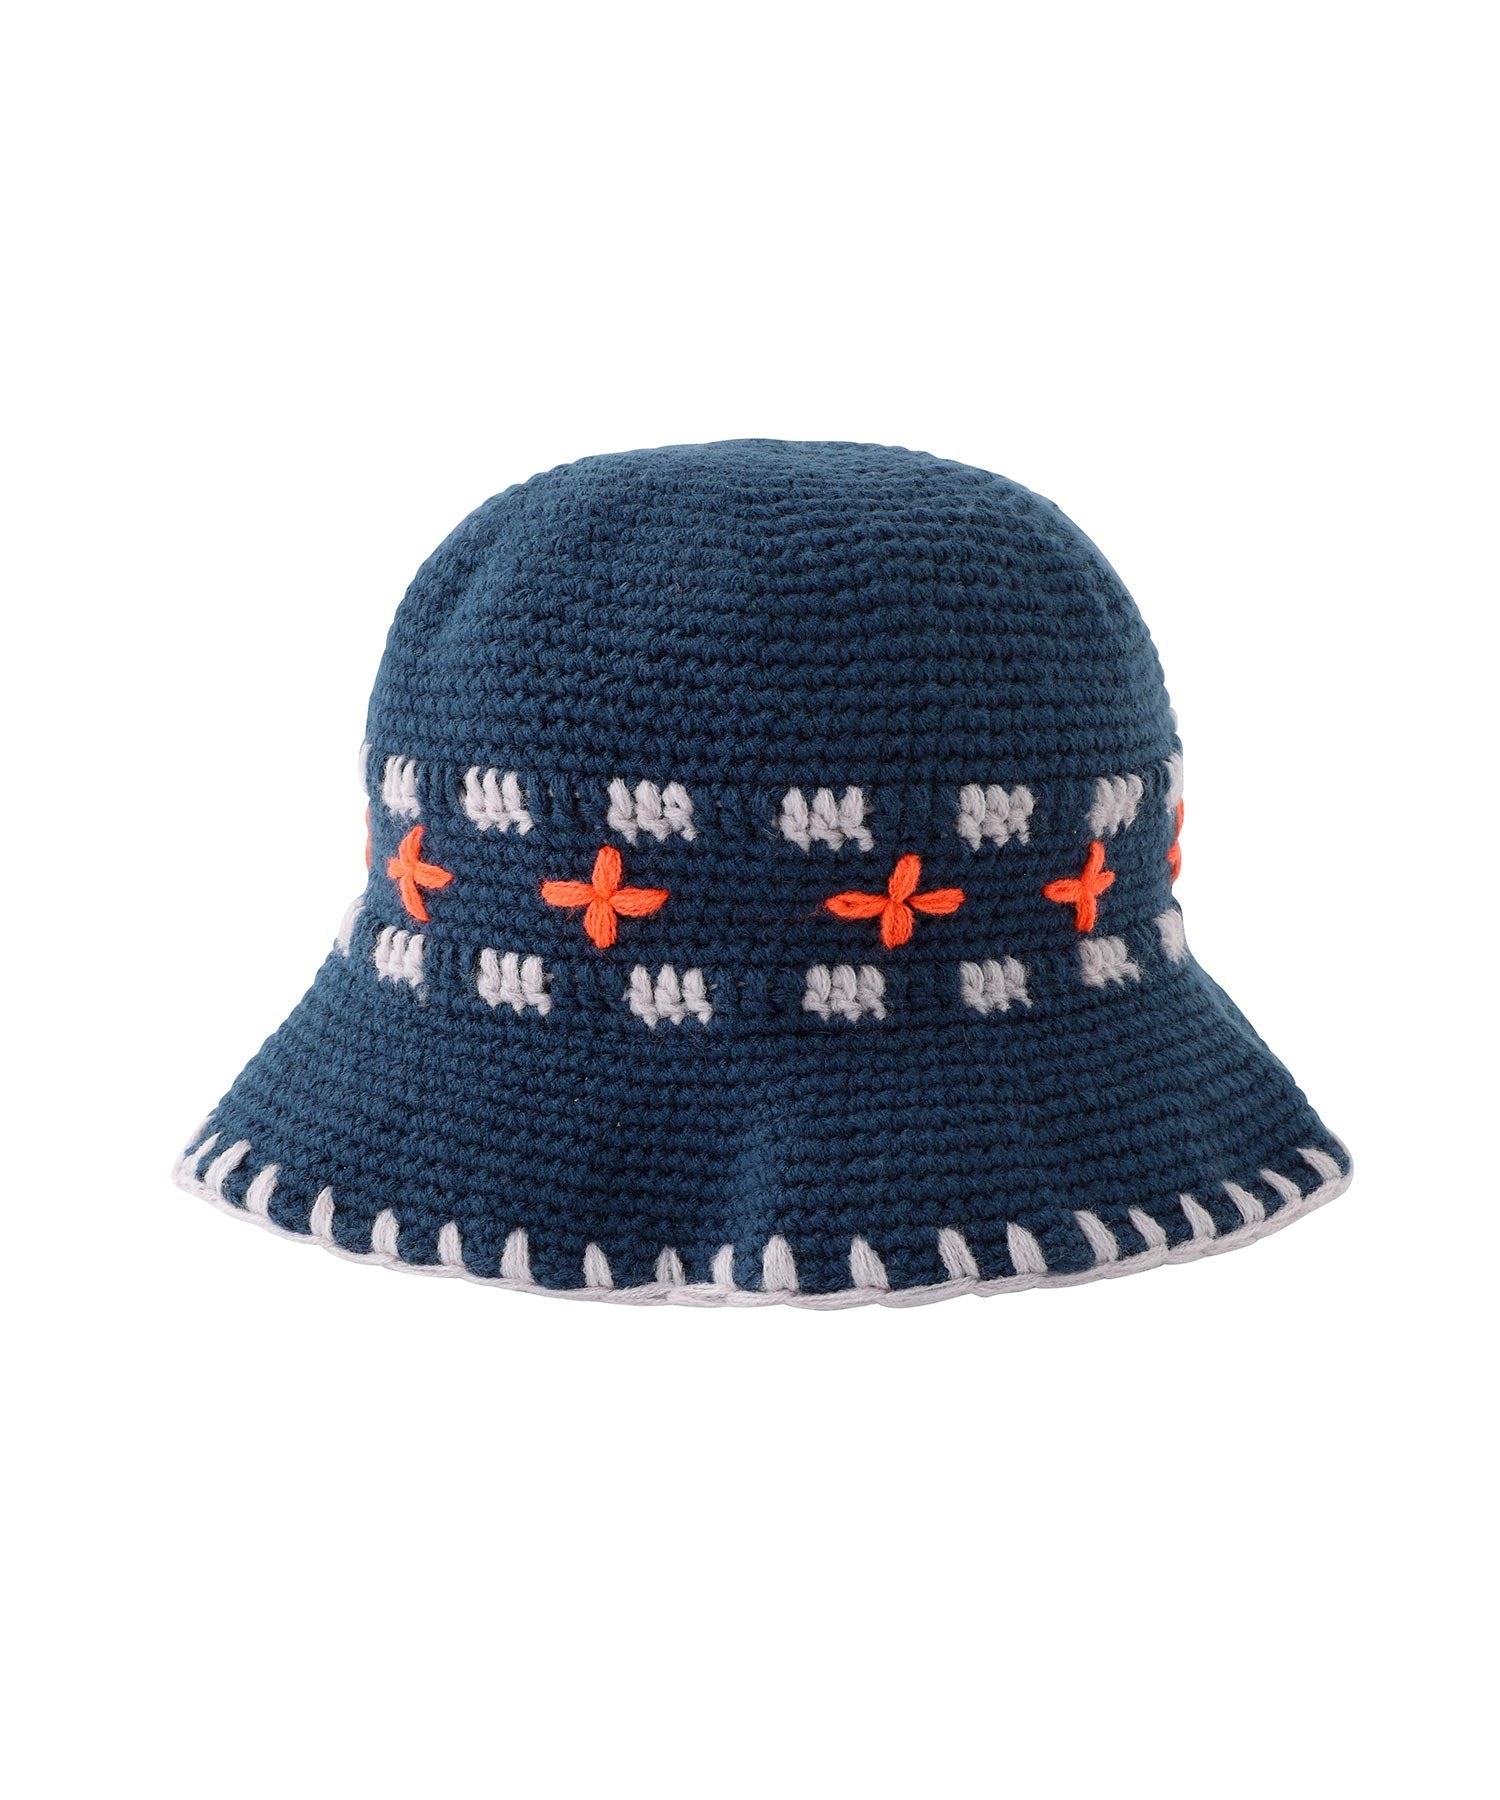 良ければ専用お願いしますsoonerorlater   Hand-knitted Bucket Hat